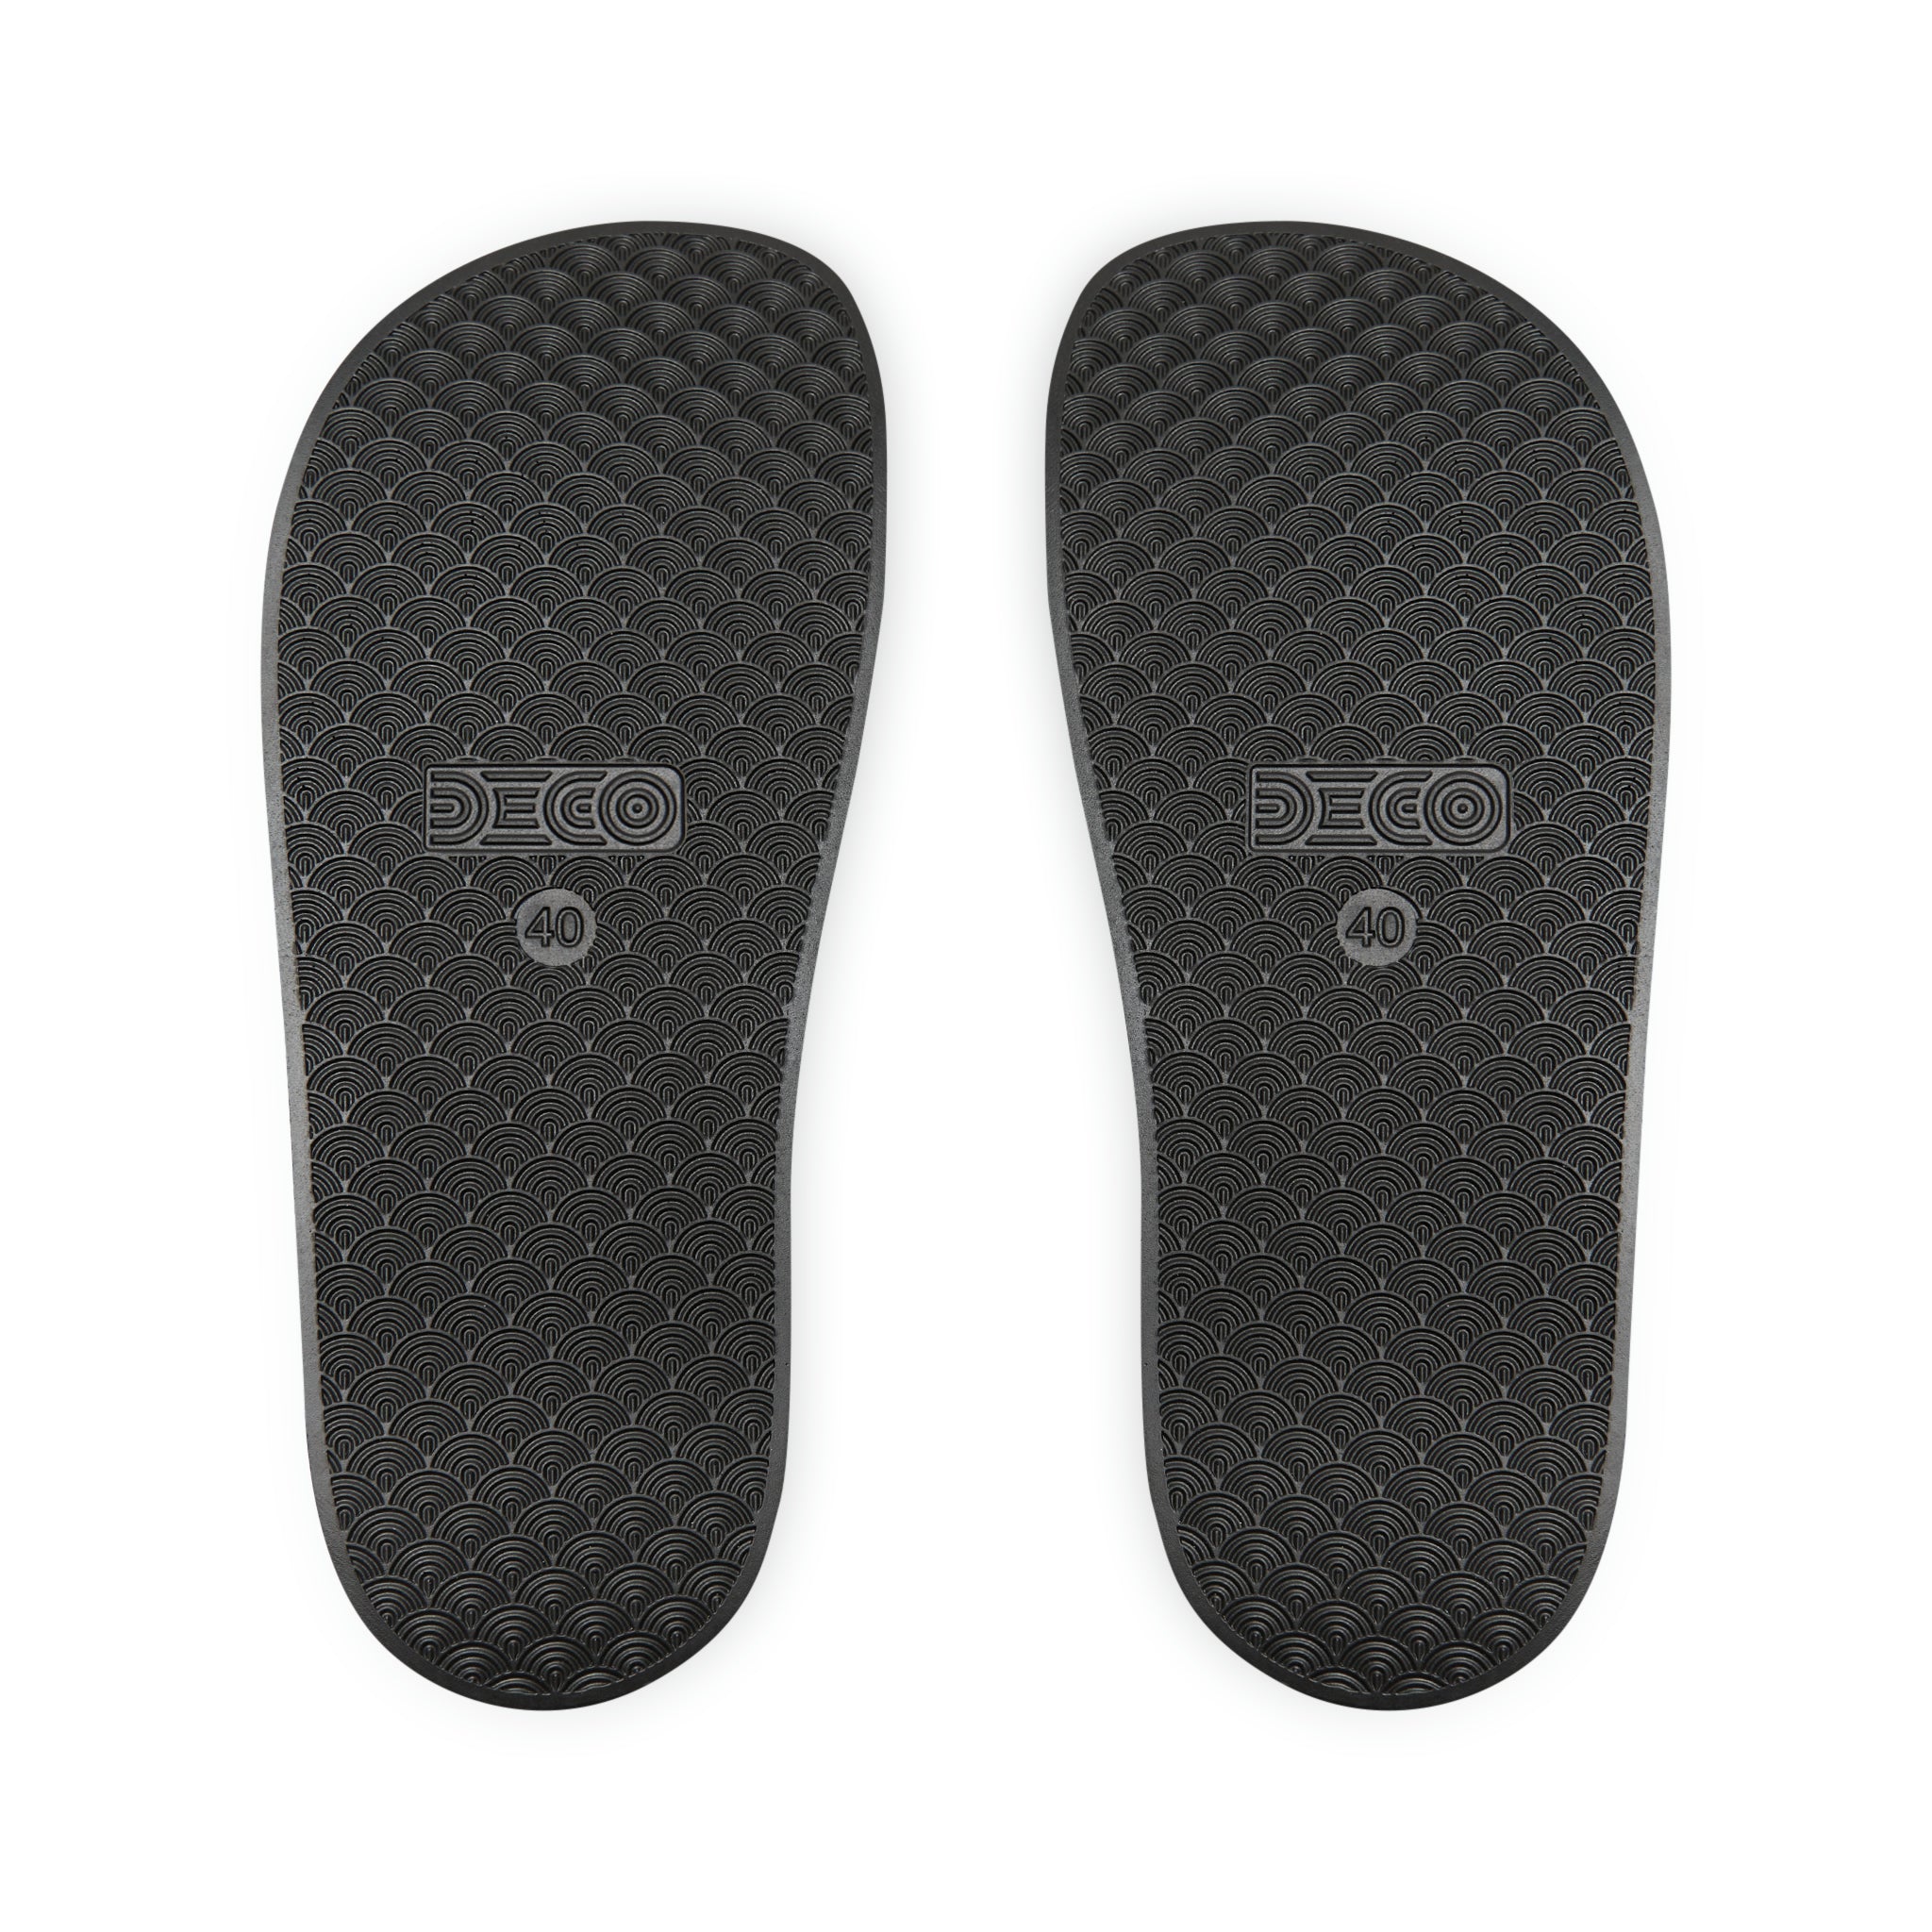  Beige Plaid Plus Sign Men's Slide Sandals, Summer Slide Sandals for Men Shoes